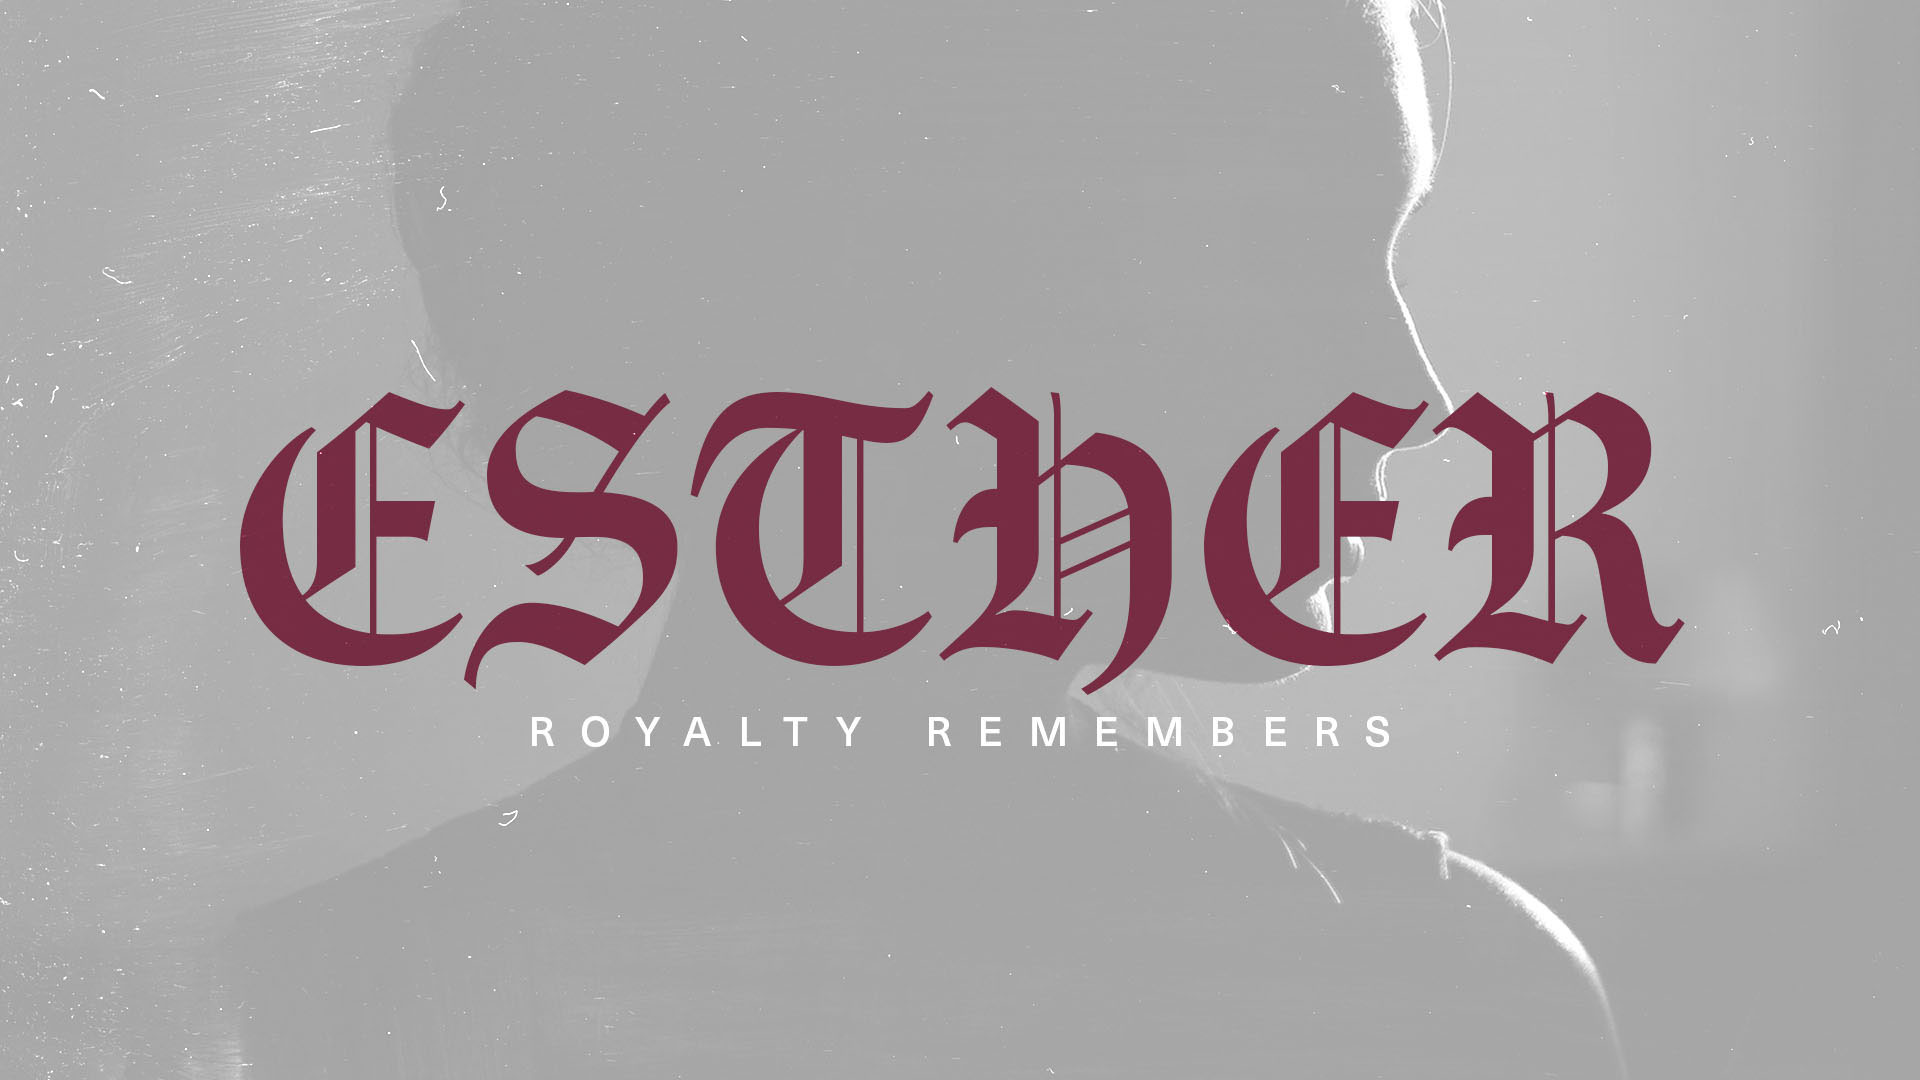 Series: Esther Royalty Remembers: Week 1